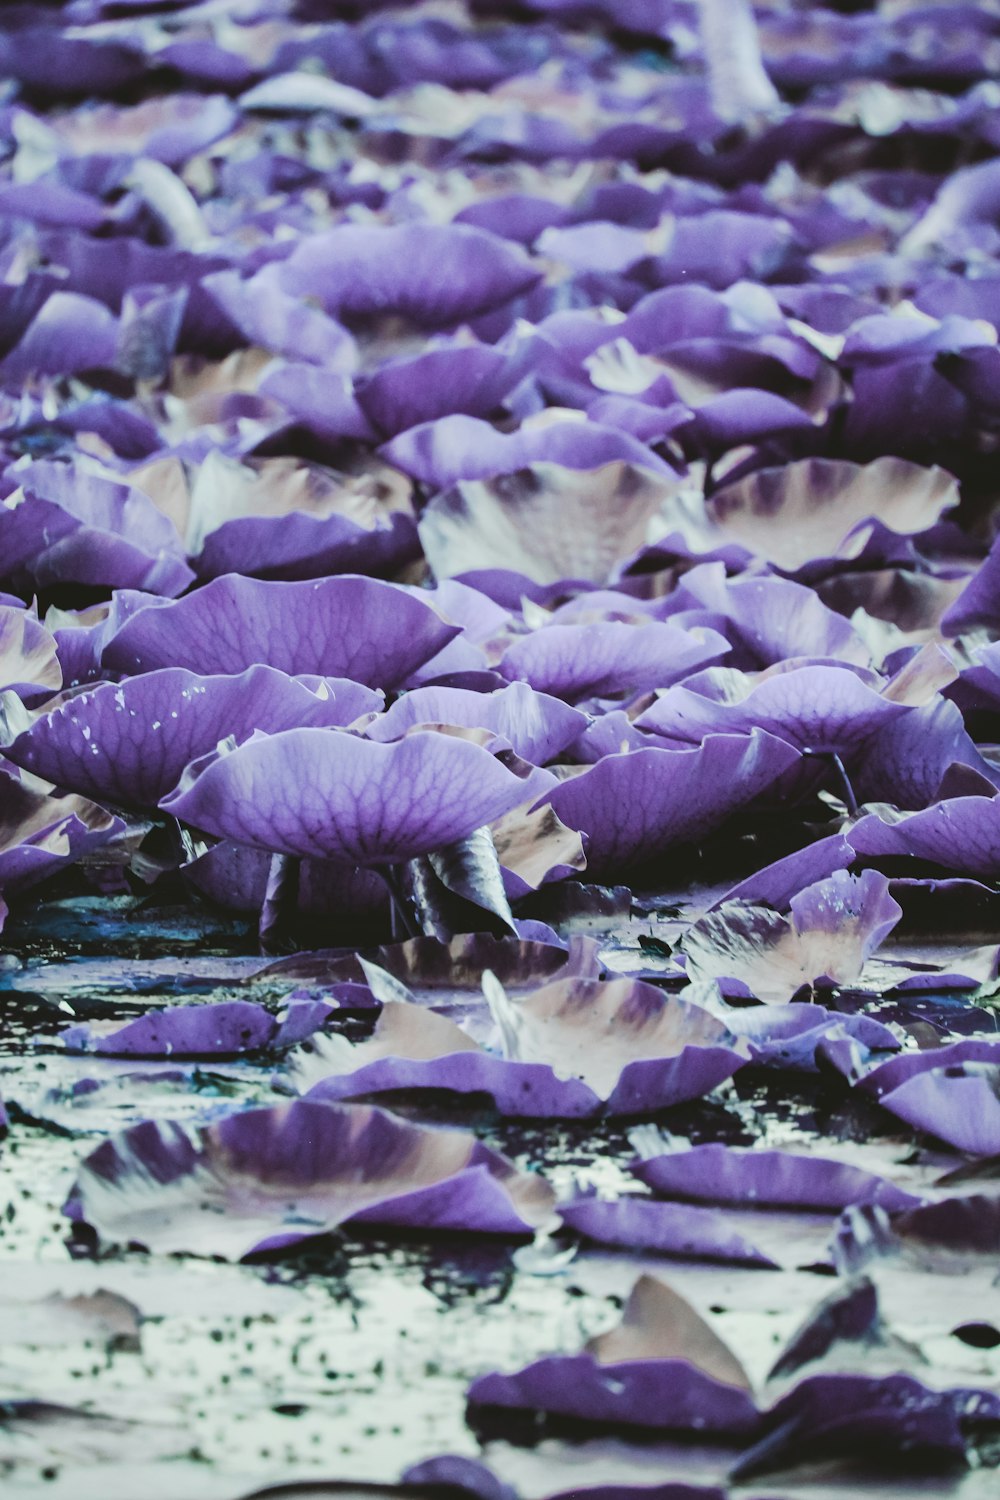 fiori viola e bianchi sull'acqua